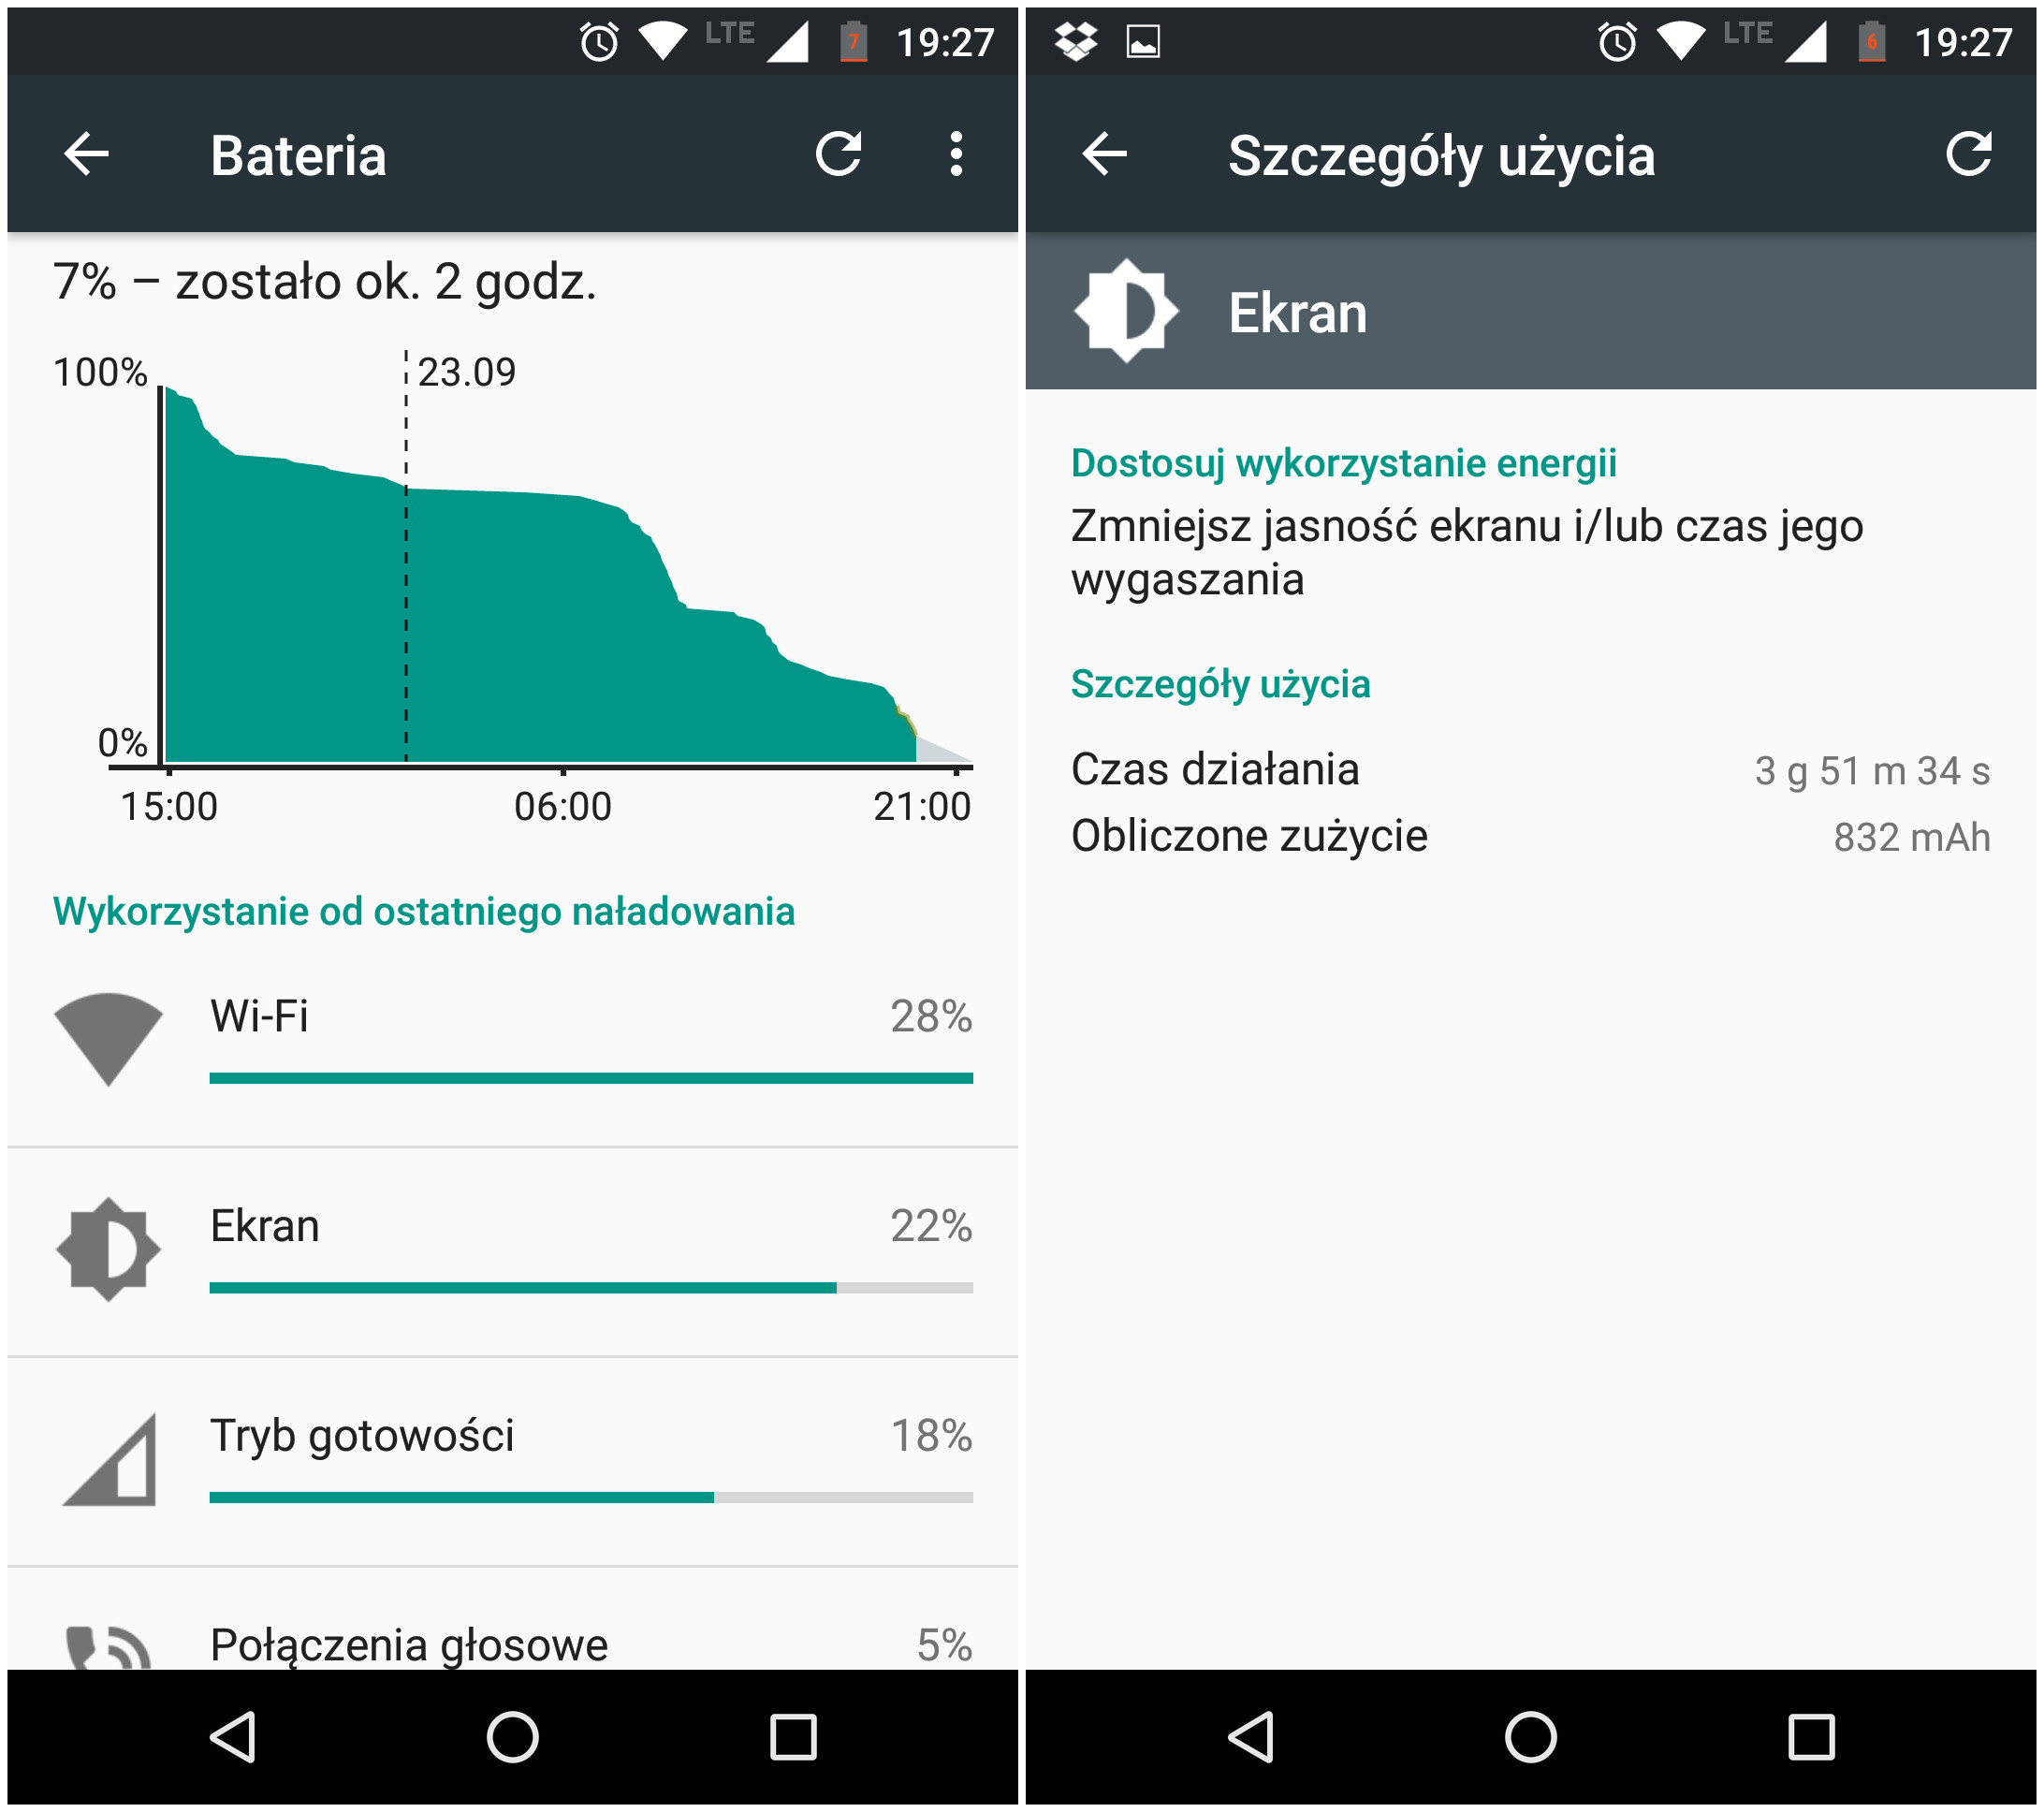 Lenogo Moto G 4-gen - Przykładowe zużycie baterii - recenzja 90sekund.pl